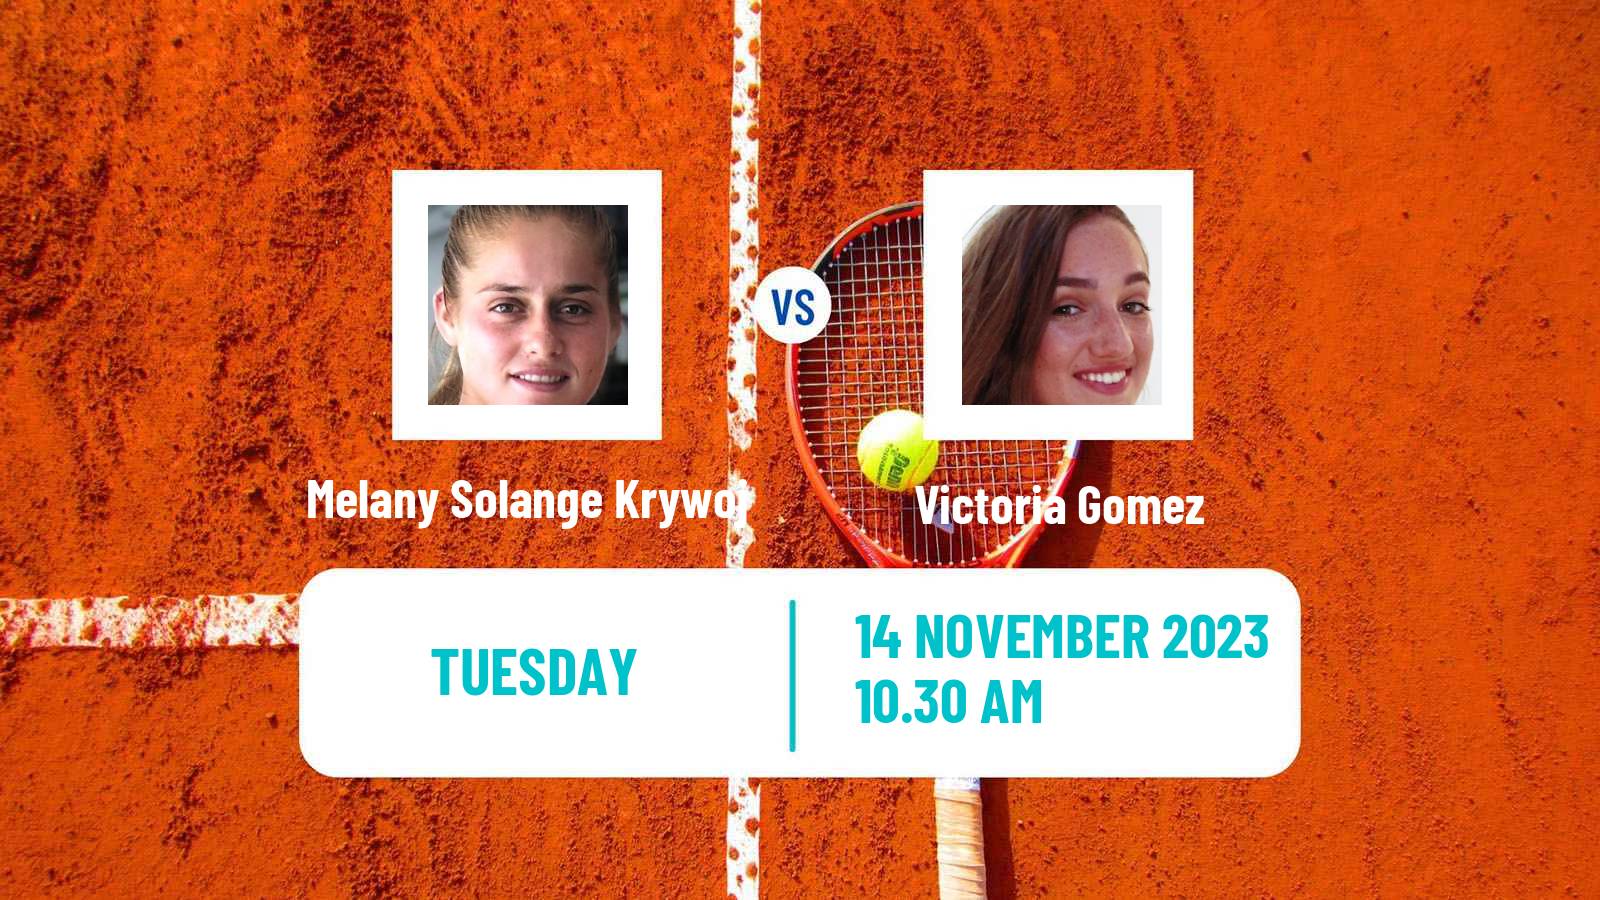 Tennis ITF W25 Santo Domingo 6 Women Melany Solange Krywoj - Victoria Gomez